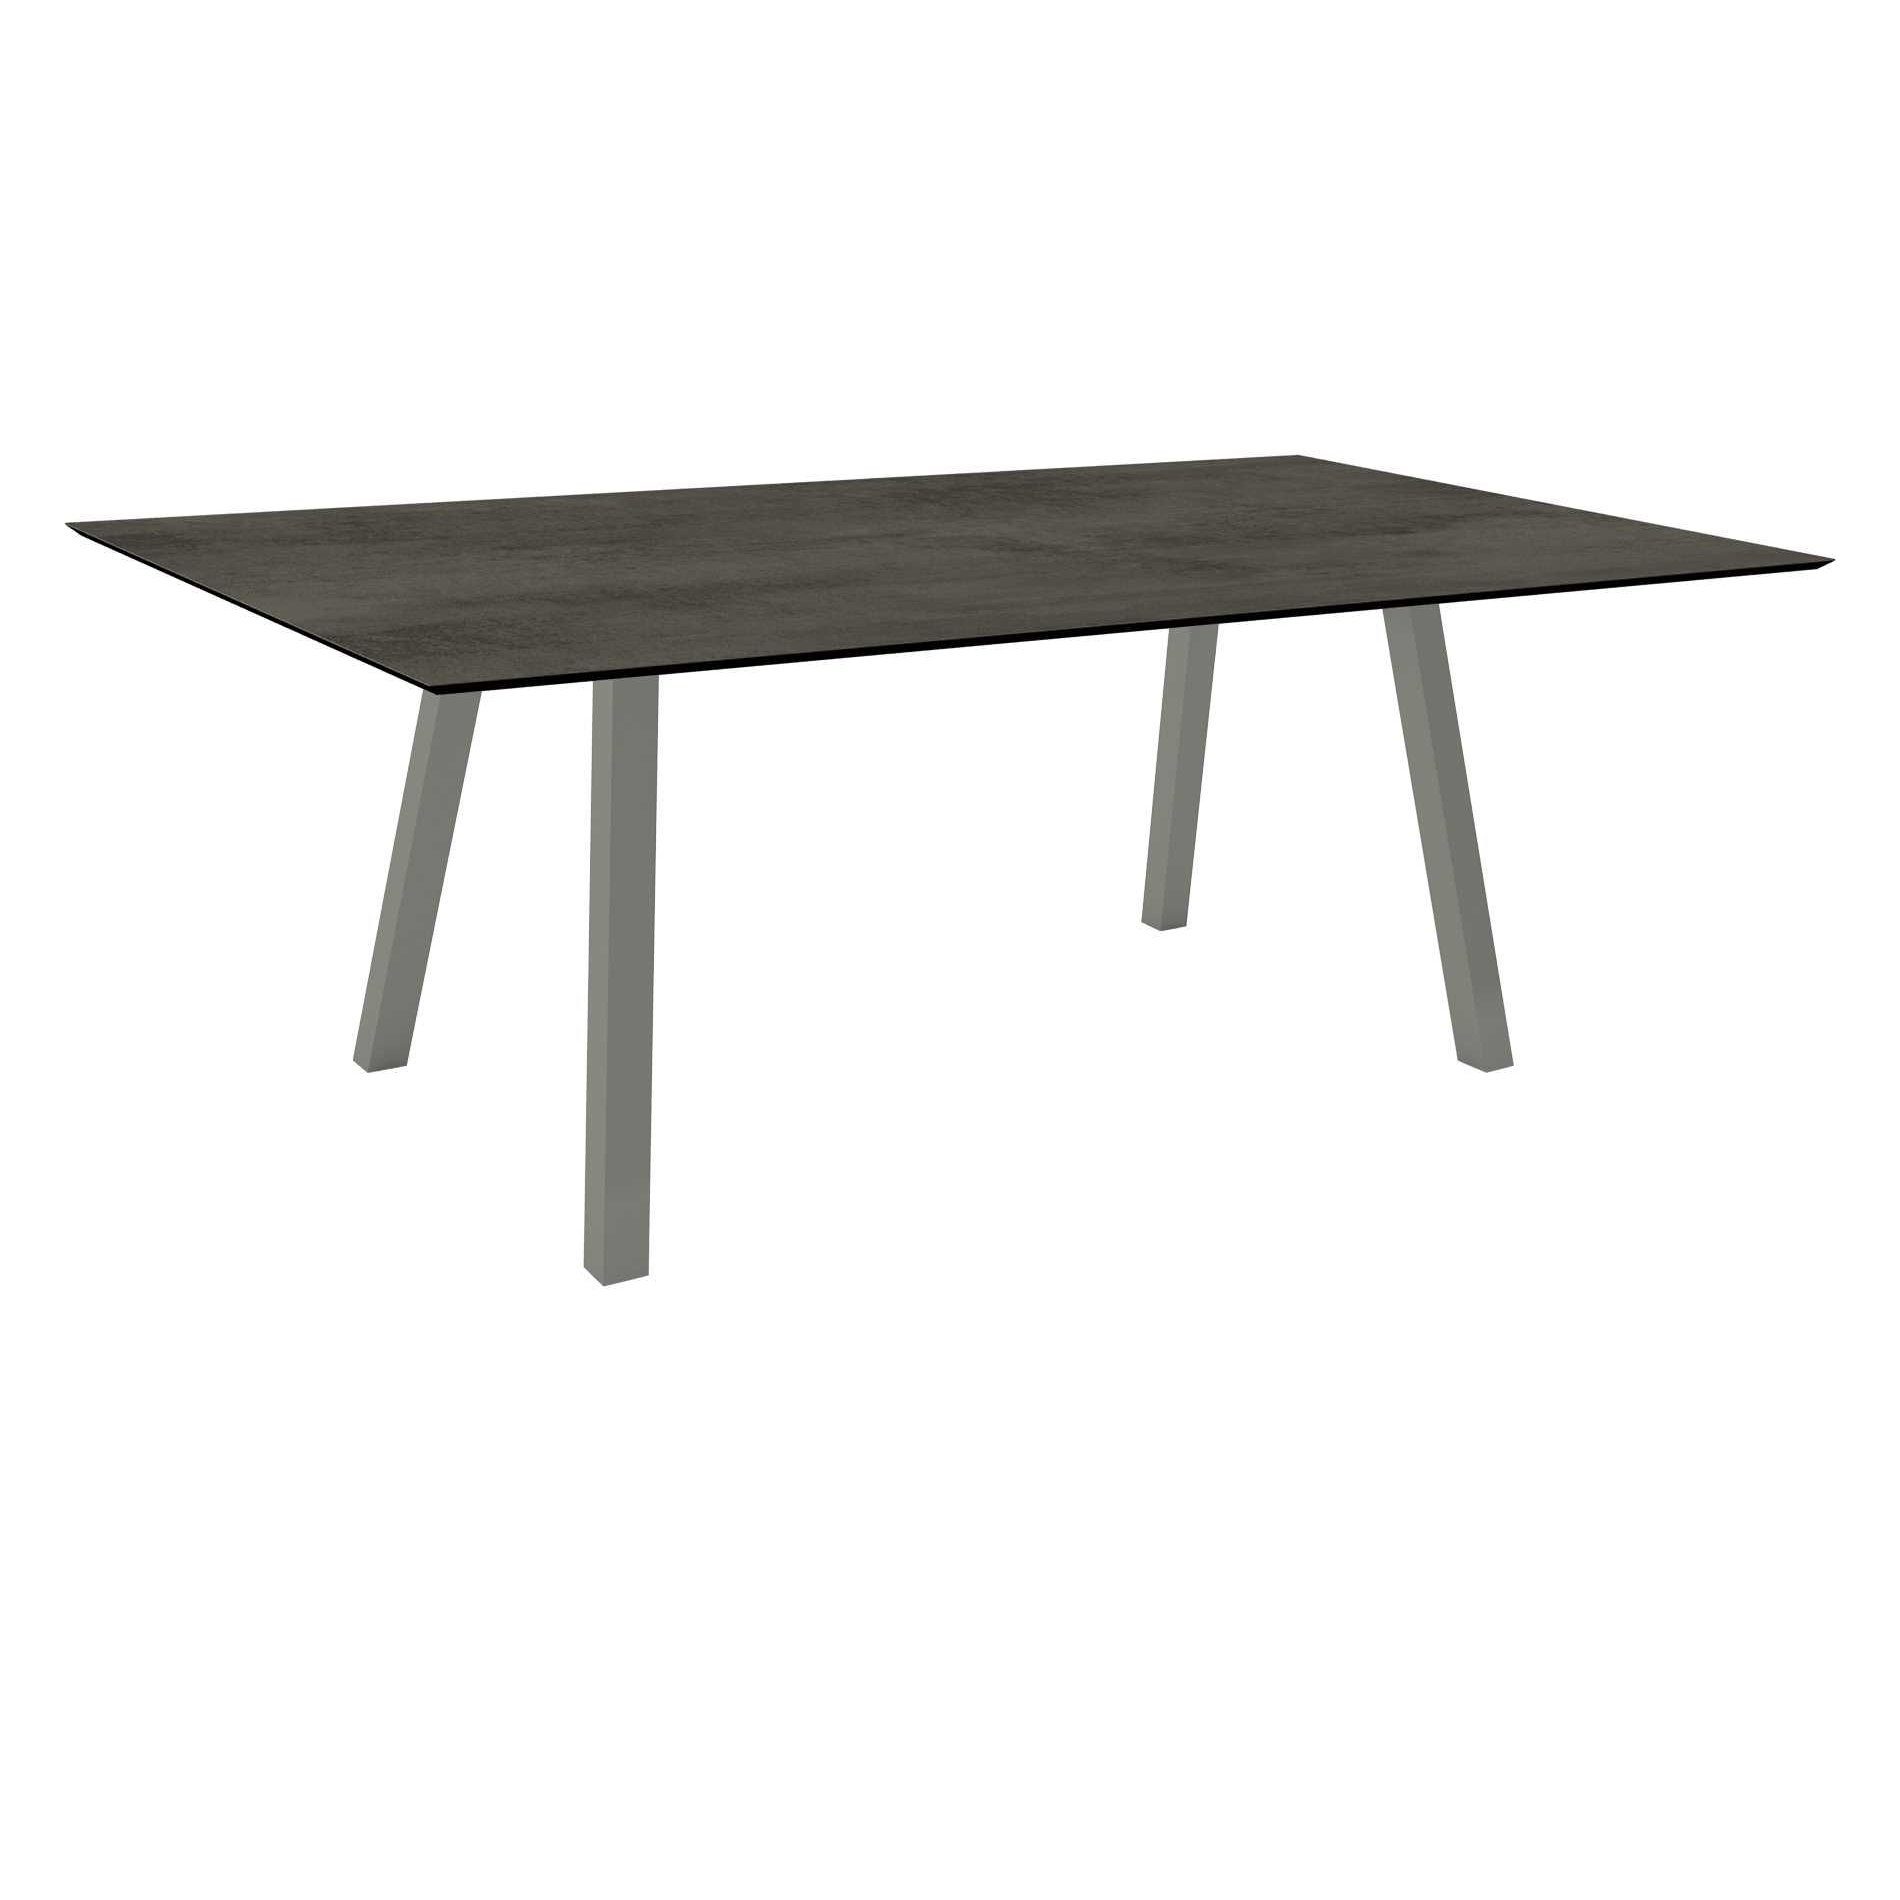 Stern Tisch "Interno", Größe 180x100cm, Alu graphit, Vierkantrohr, Tischplatte HPL Zement